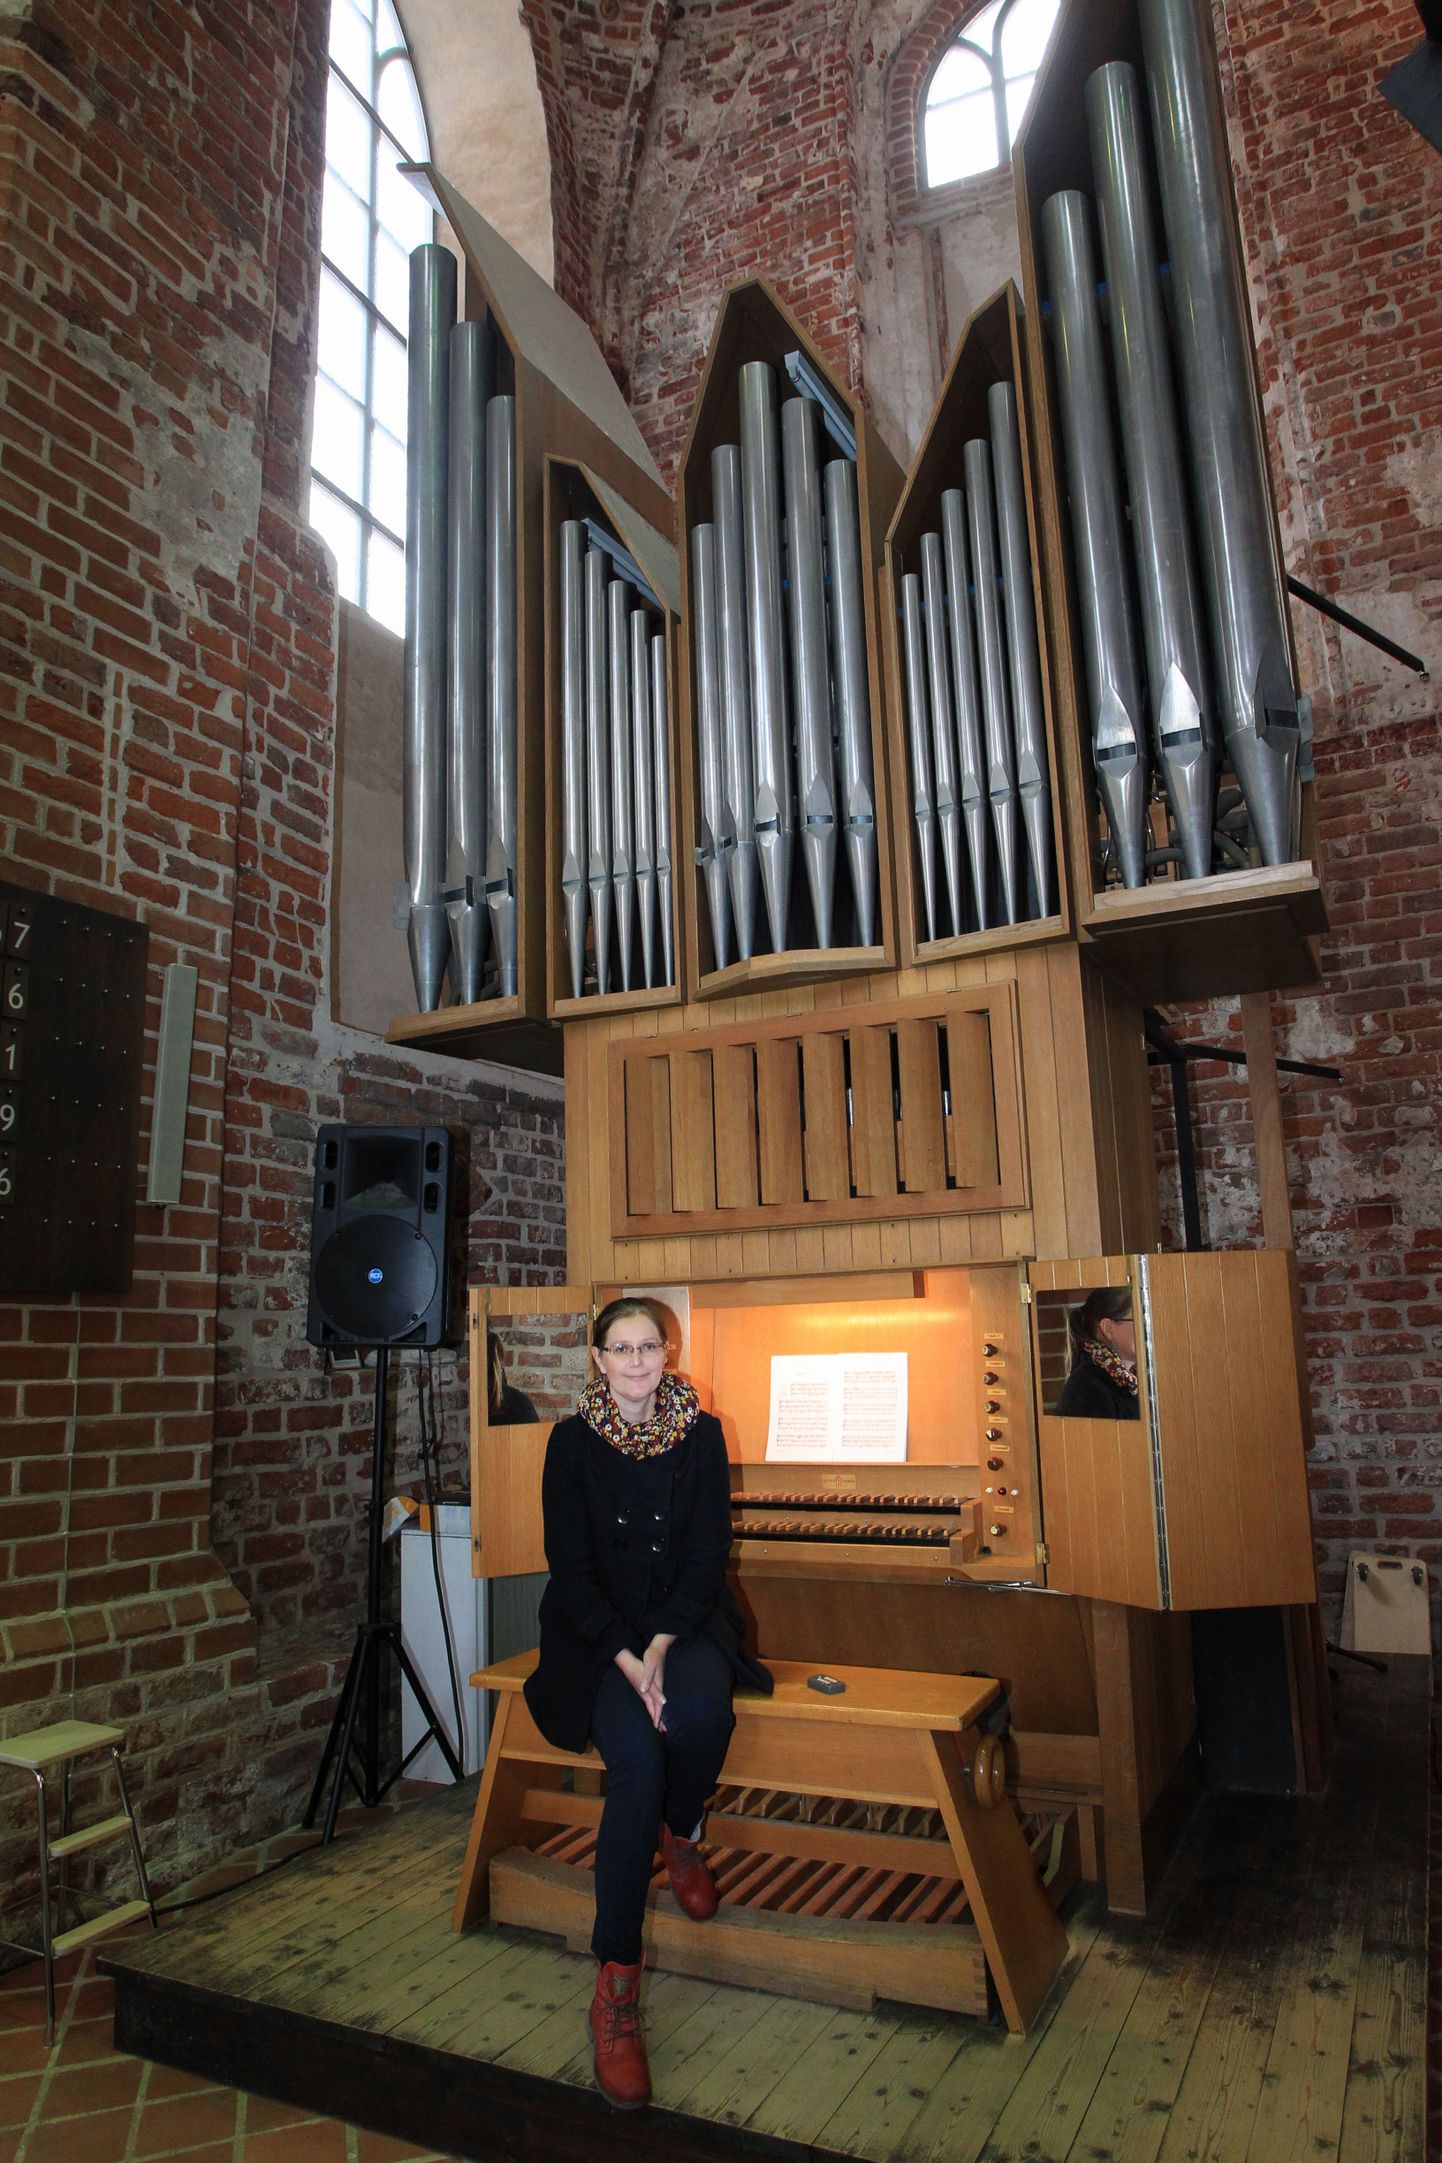 Jaani kiriku organist Elke Unt ütleb, et uus orel tuleb vana oreli koha peale. On vaja head koostööd, et barokkstiilis pill mõne aasta pärast olemas oleks. «See töö peab kokku sobima nagu sipelgate tegemised ühes suures sipelgapesas,» sõnas ta.